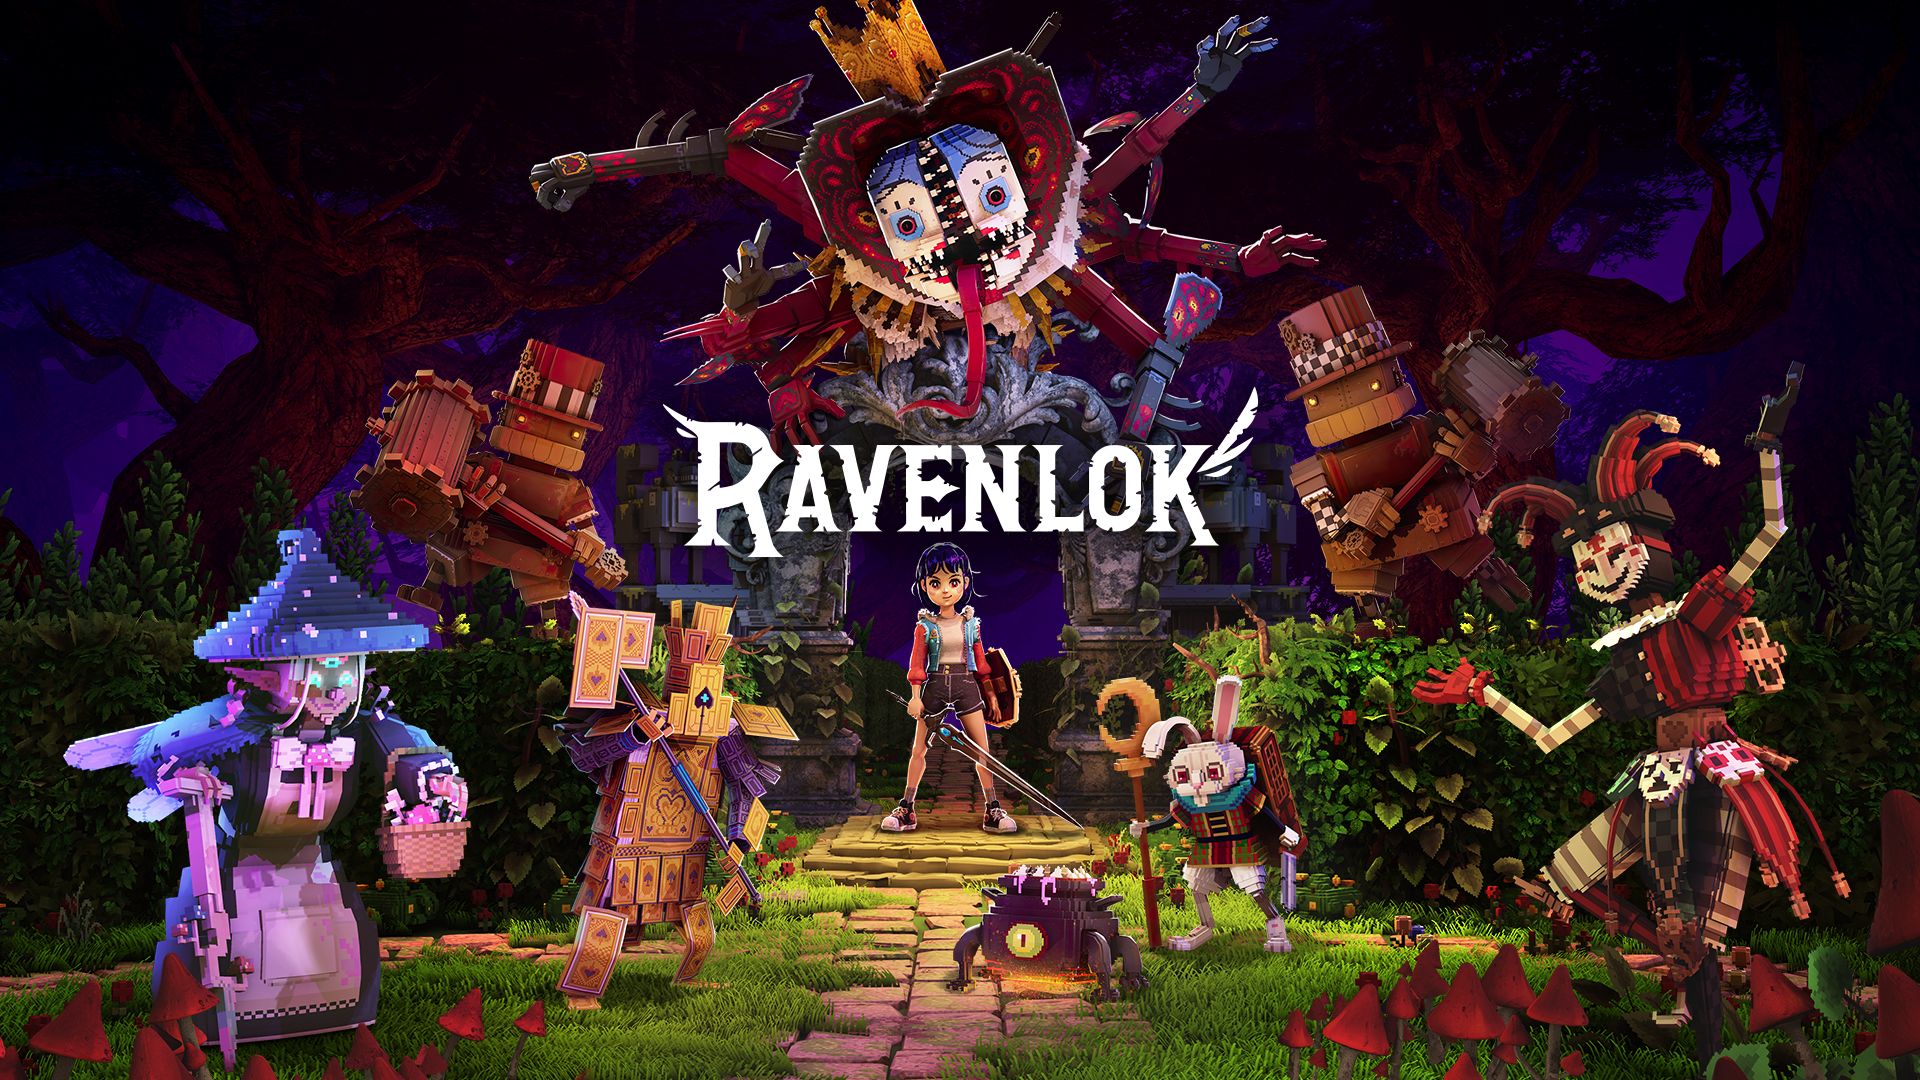 Ravenlok captura los corazones y la imaginación de los jugadores de todo el mundo